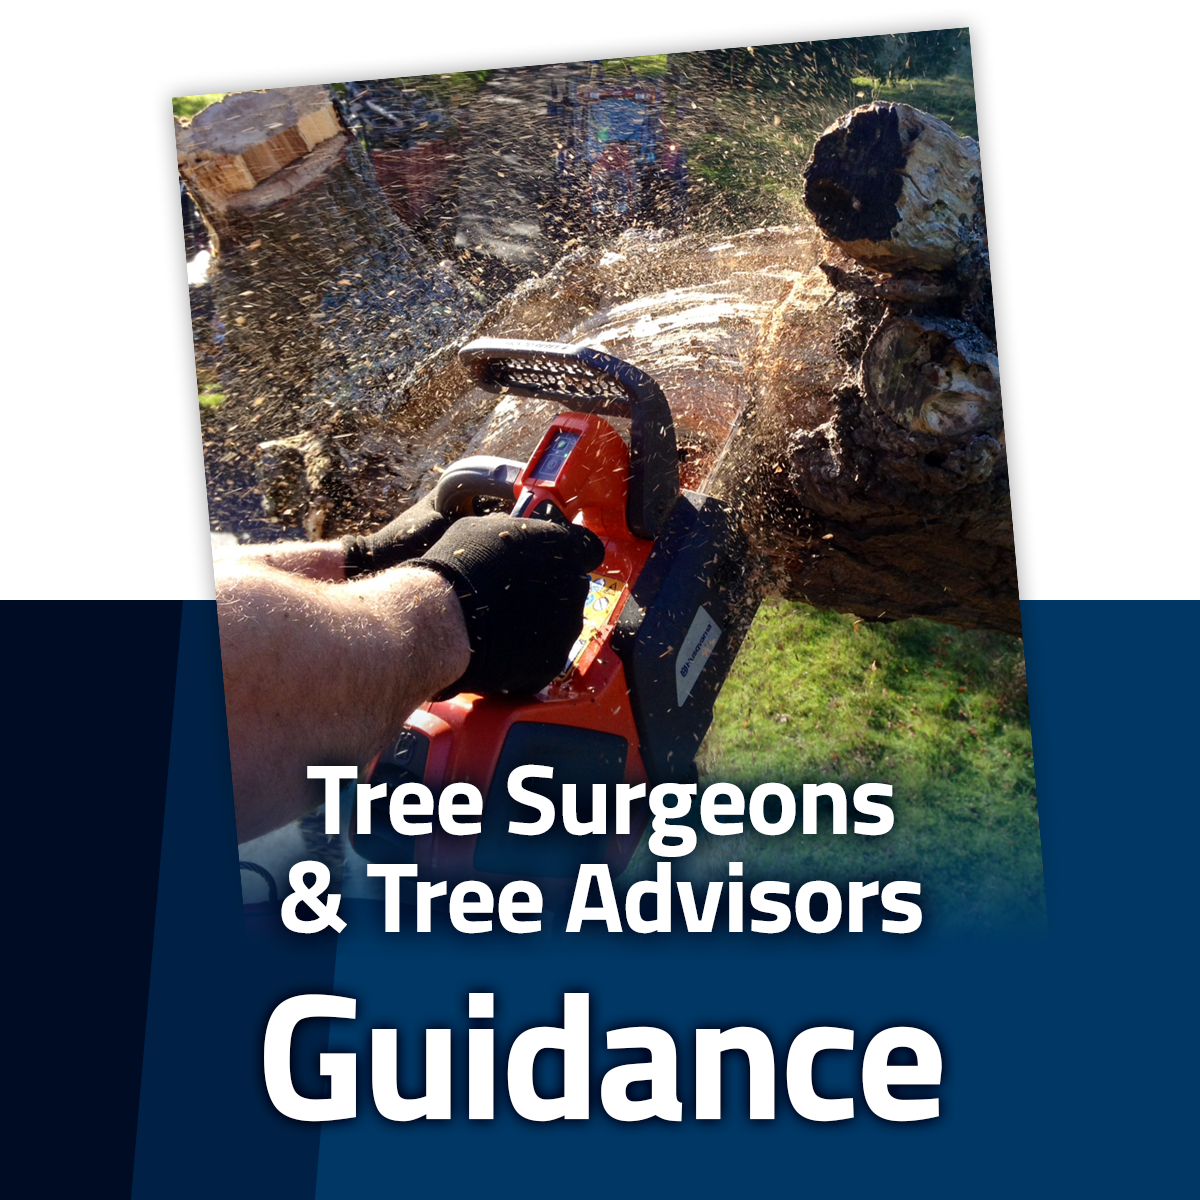 Tree Surgeons & Tree Advisors